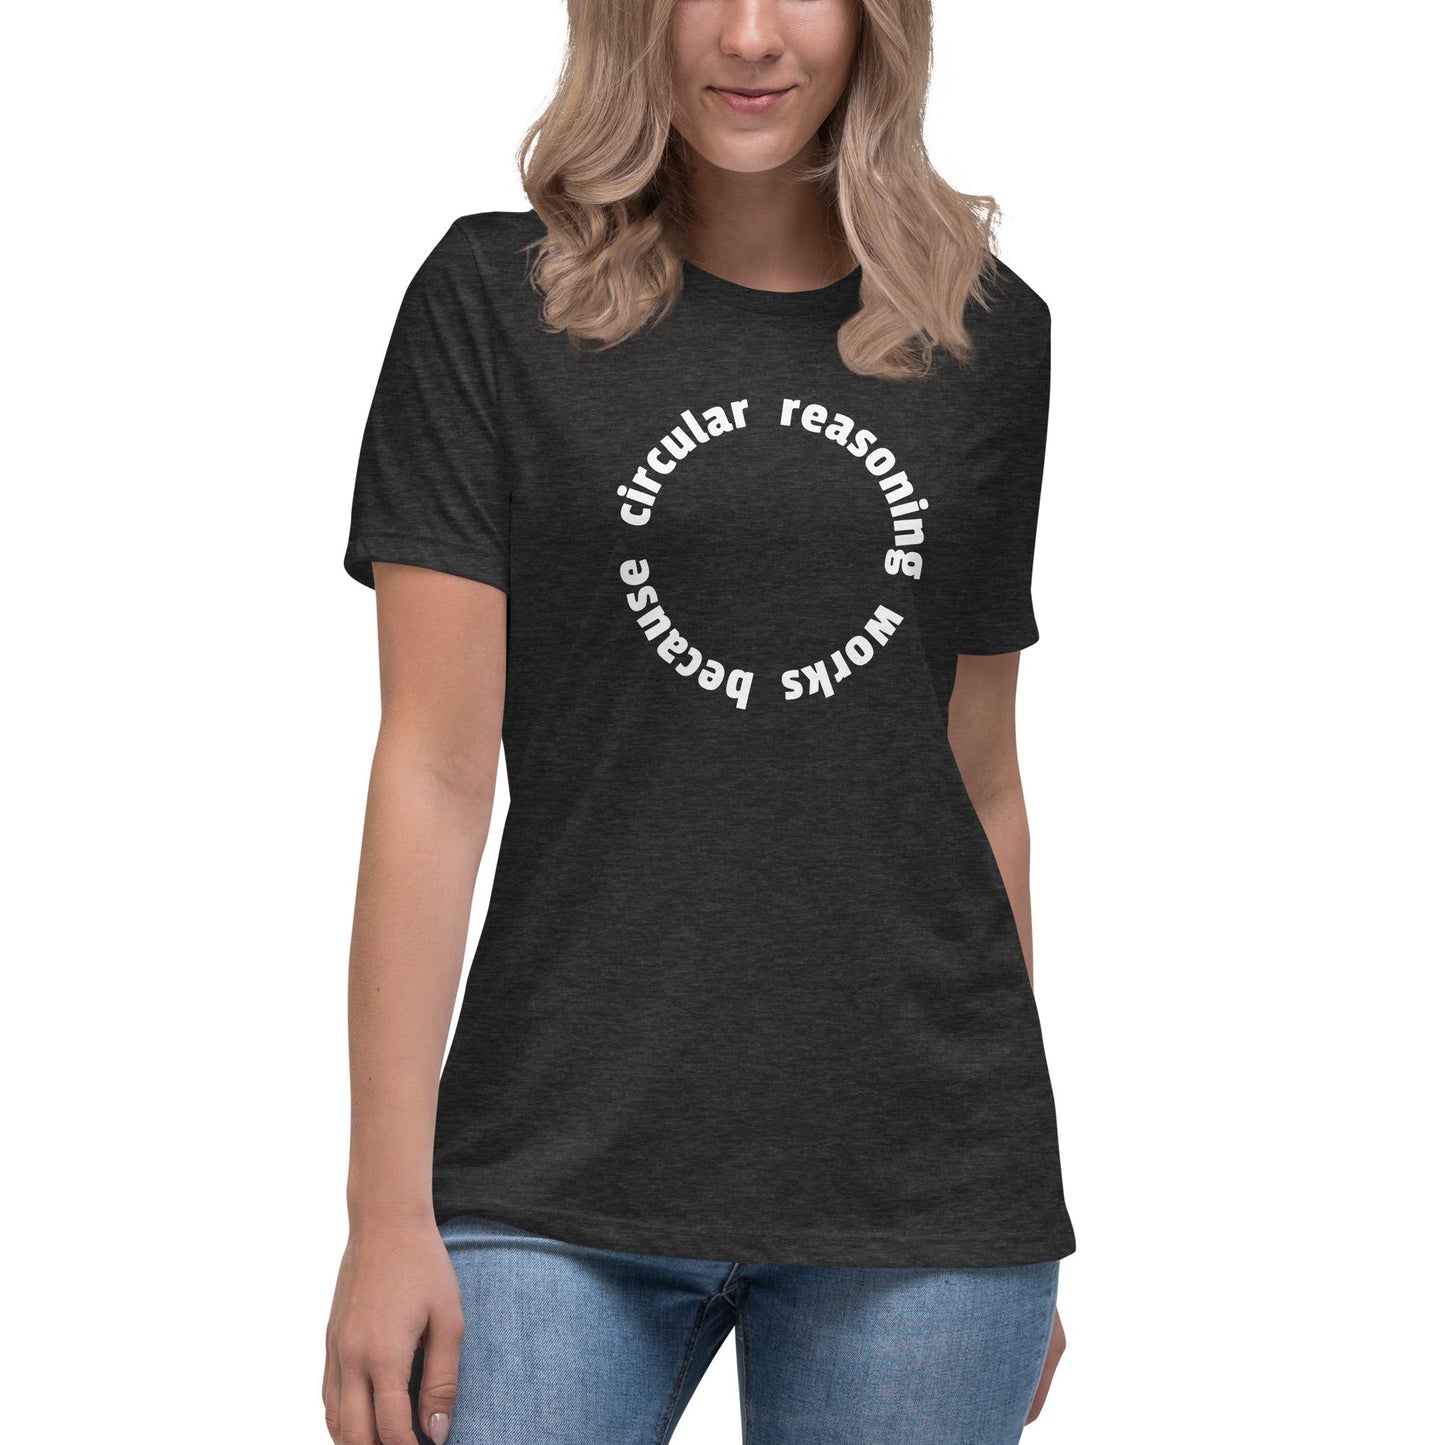 Circular reasoning works - Women's T-Shirt